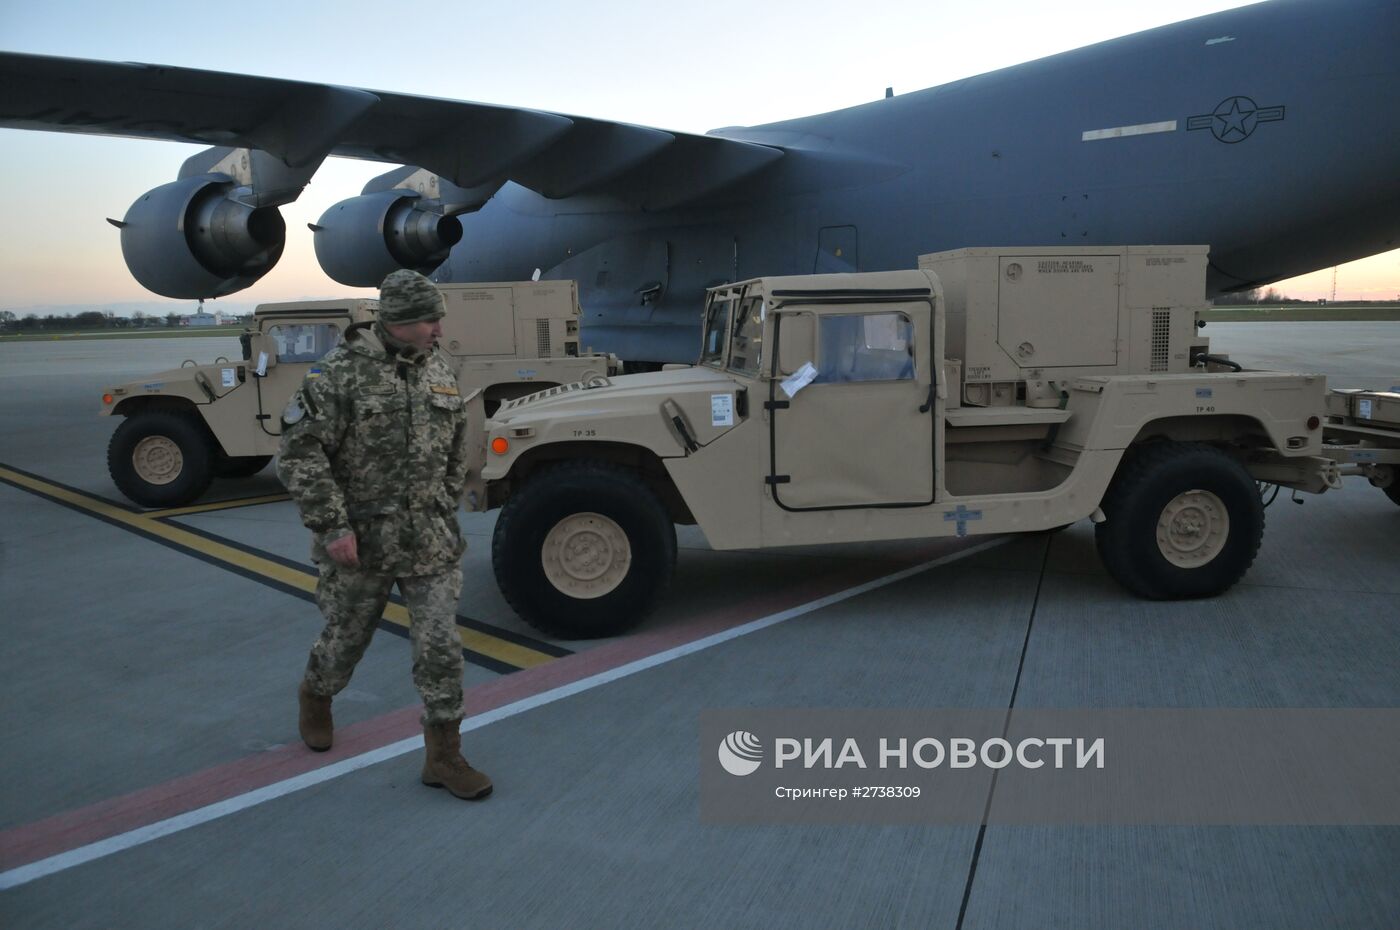 ВСУ Украины получили американские радиолокационные станции контрбатарейной борьбы